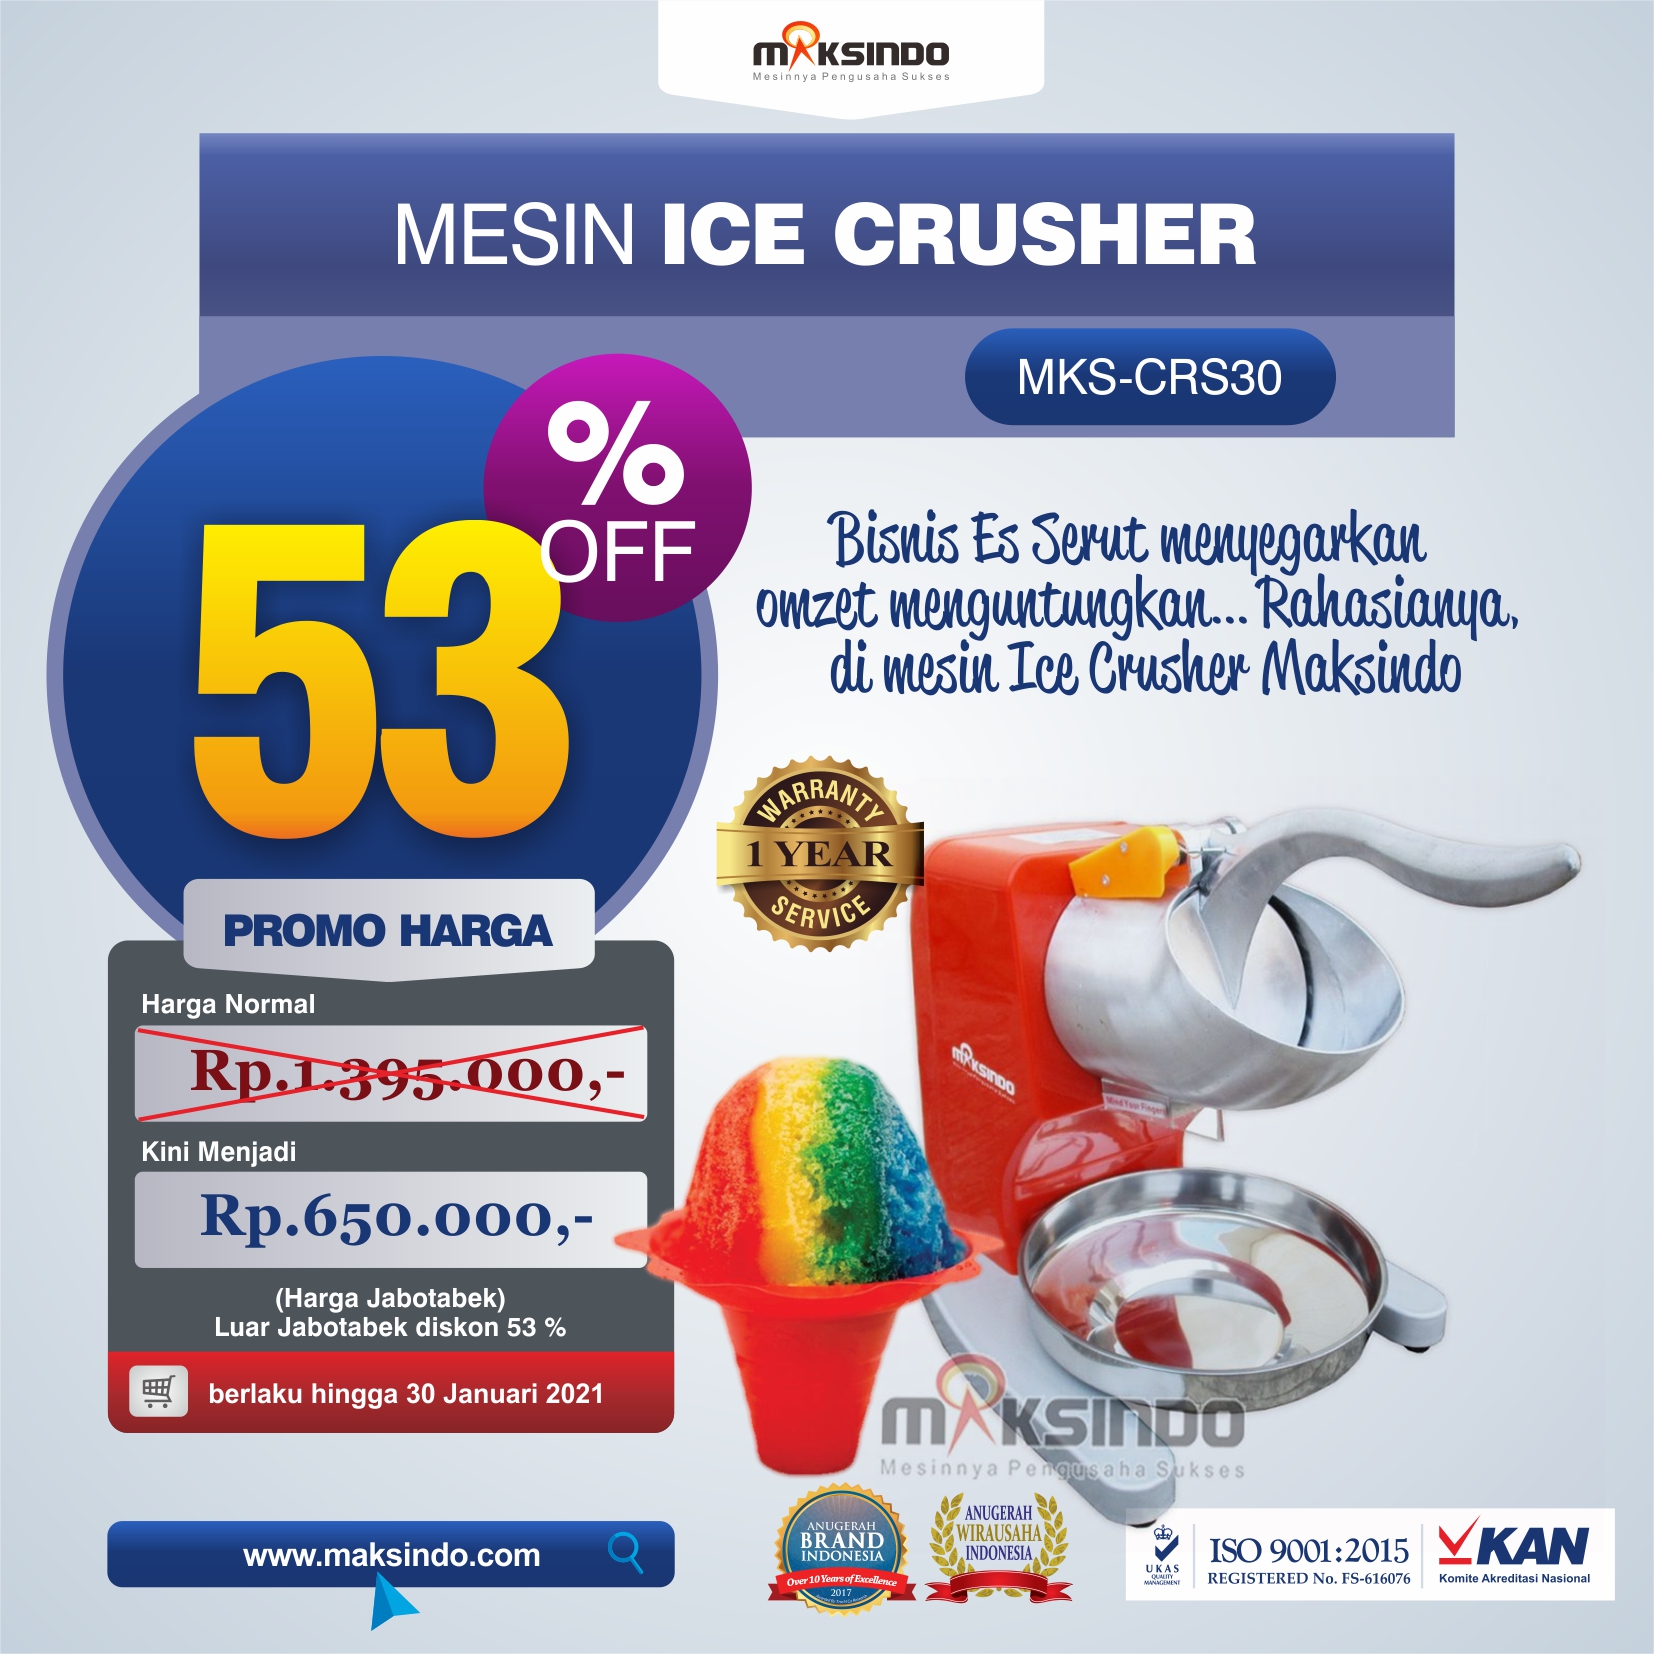 Jual Mesin Ice Crusher MKS-CRS30 di Medan